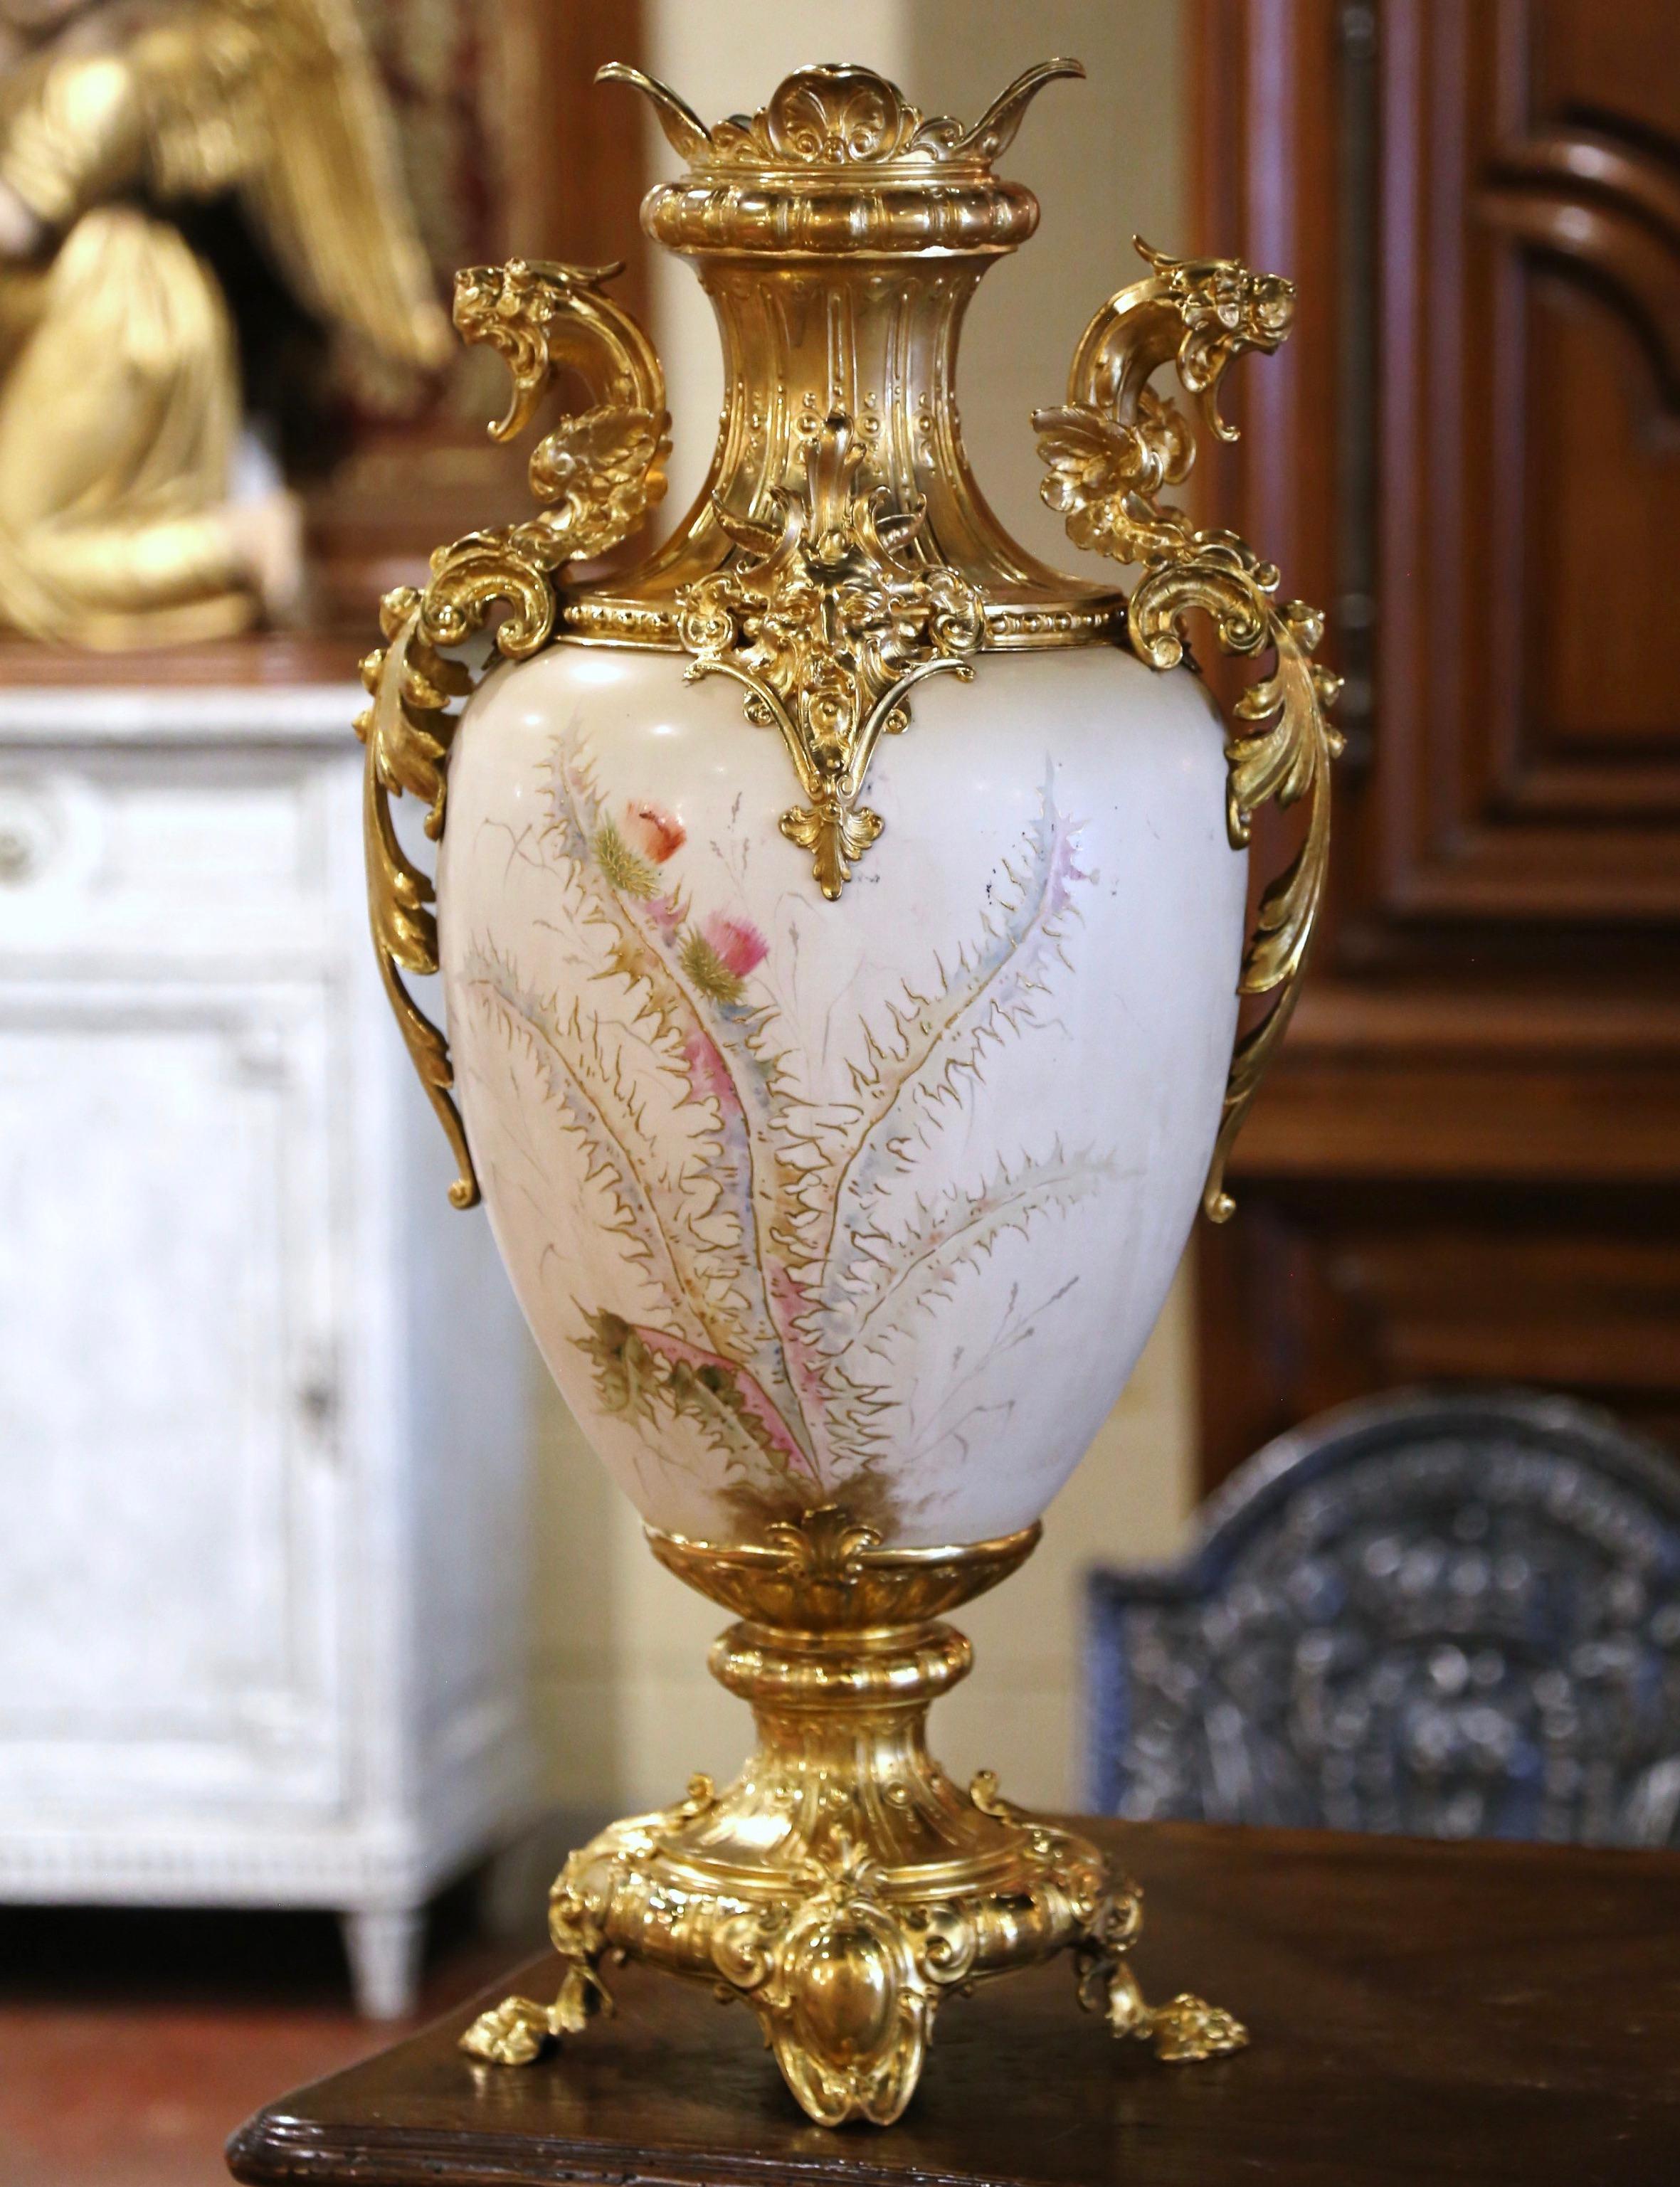 Décorez une console, une commode ou une table avec cette urne décorative élégante et colorée. Fabriqué en France vers 1960 en laiton doré et en porcelaine, ce grand vase est orné de créatures mythiques, dont deux lions ailés et deux visages cornus